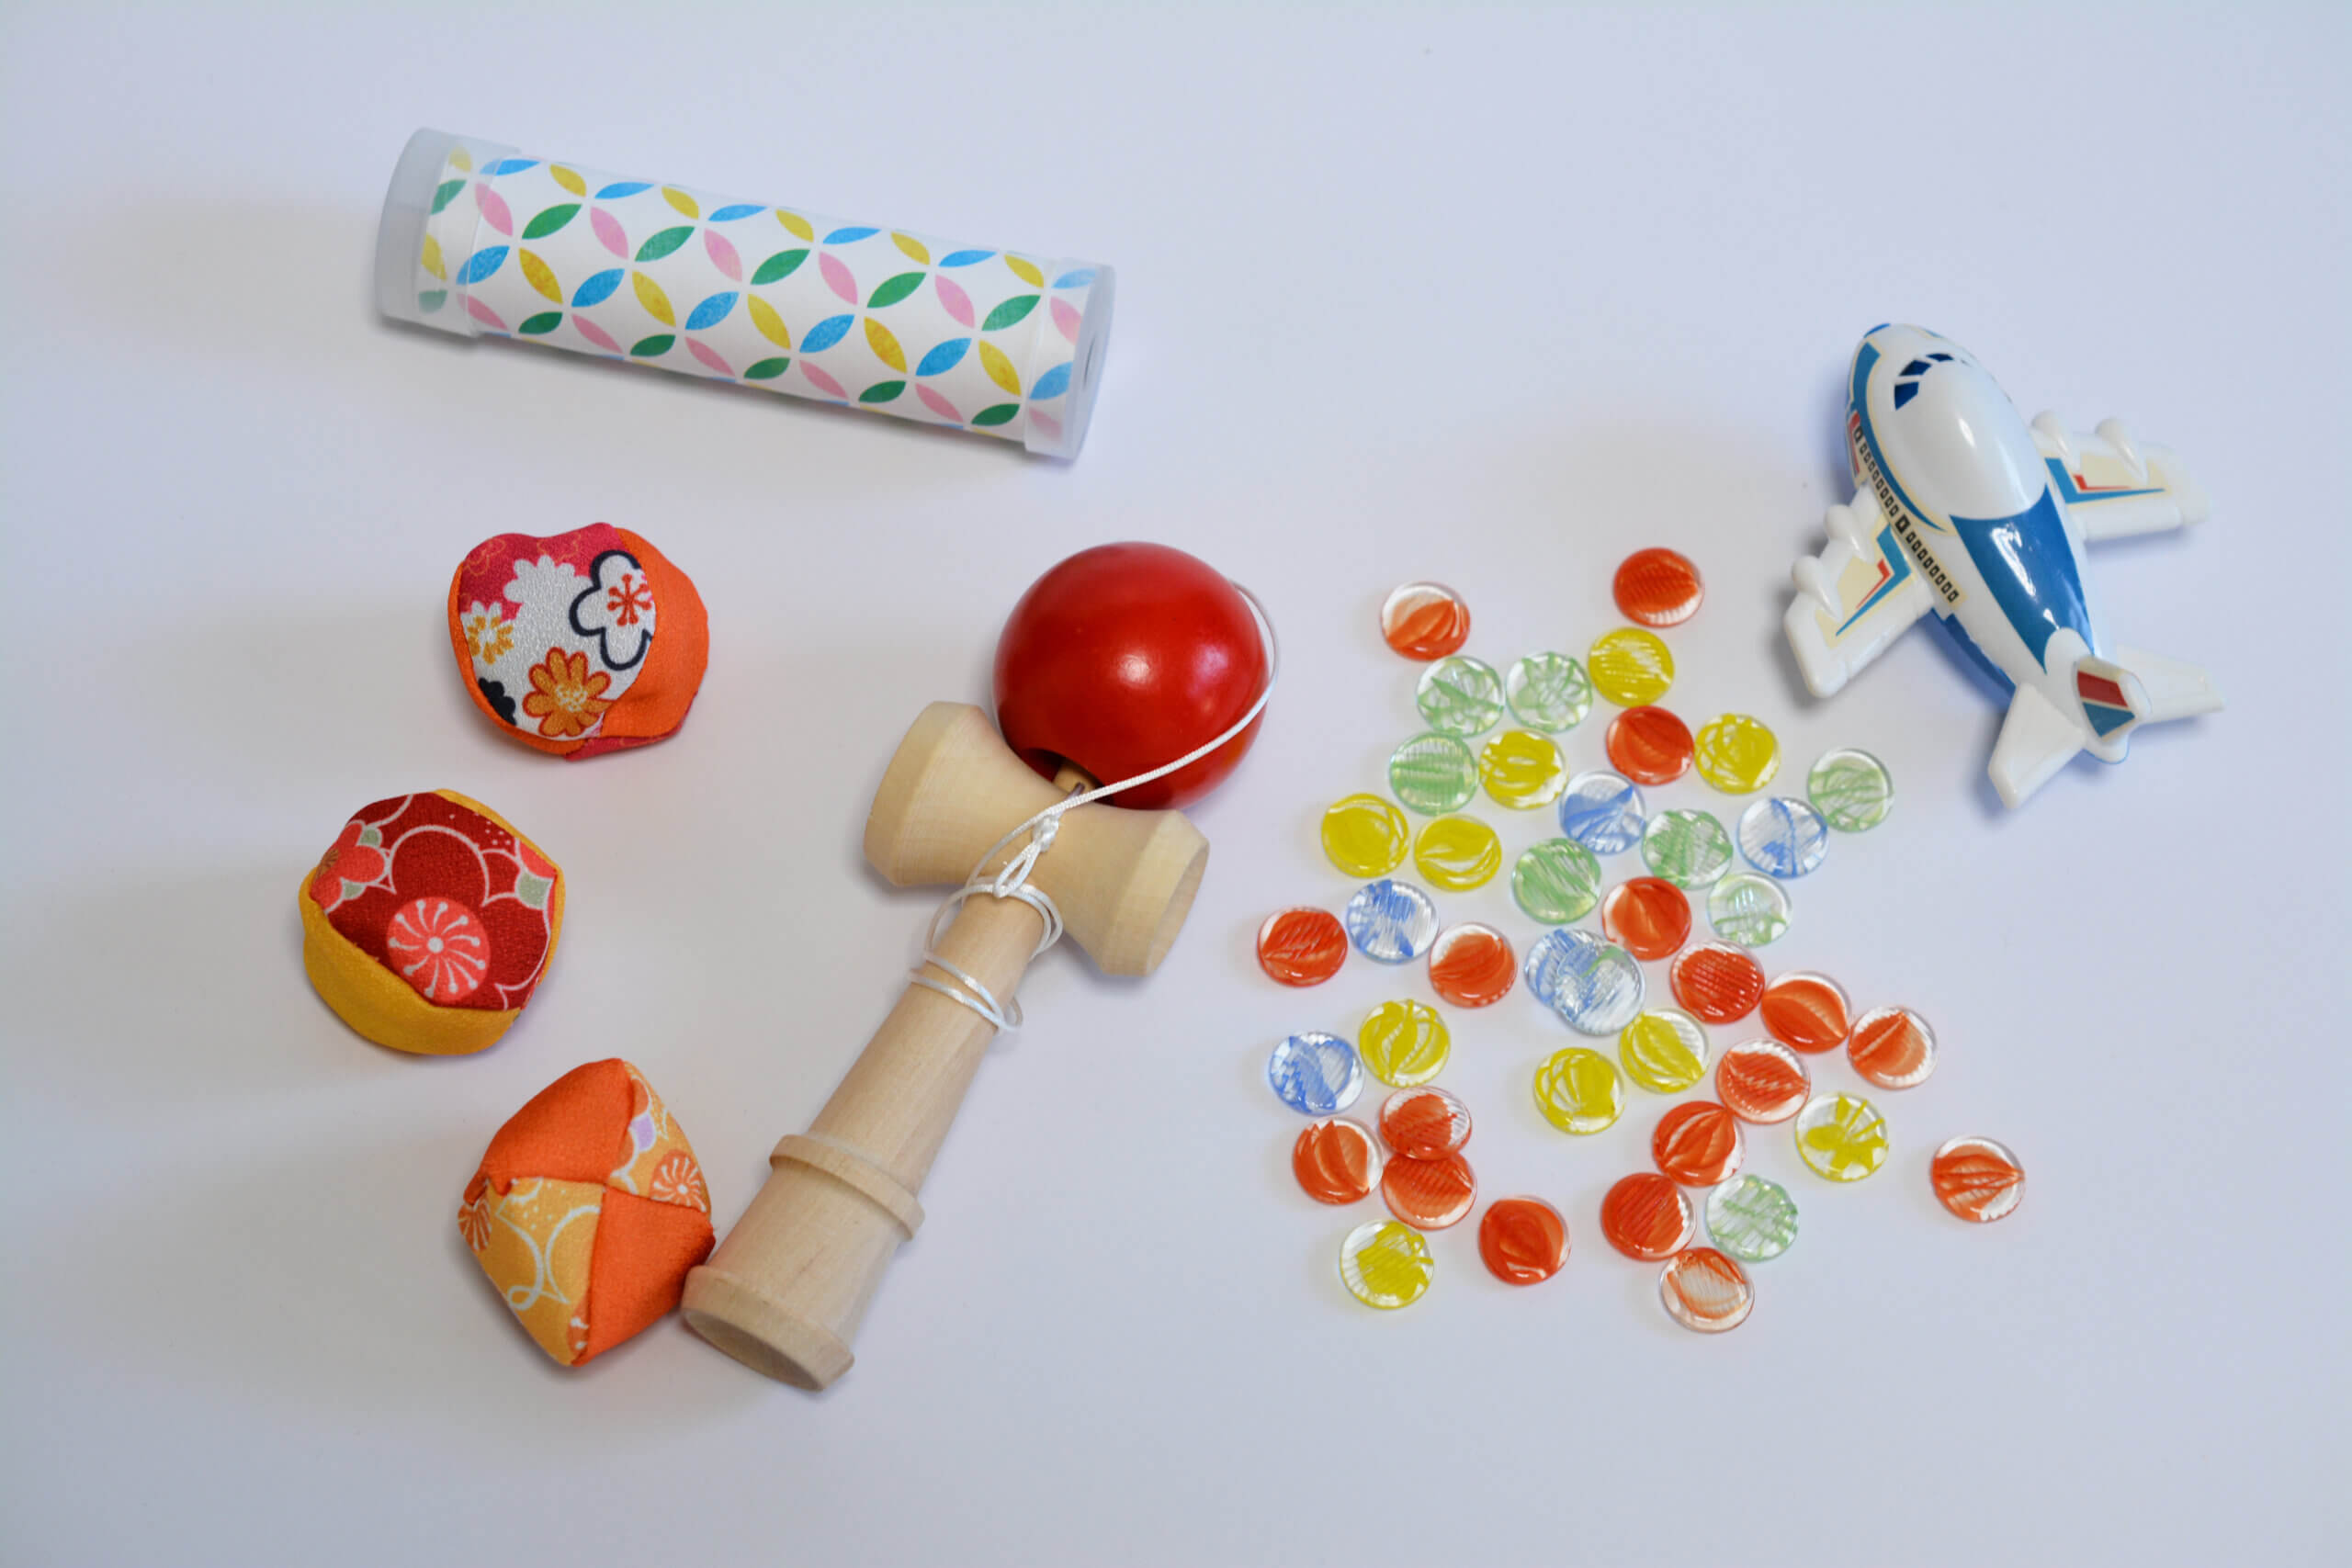 ひがしかた寺子屋「昔のおもちゃを作って遊ぼう」参加者を募集しています！【がやてっくイベント】